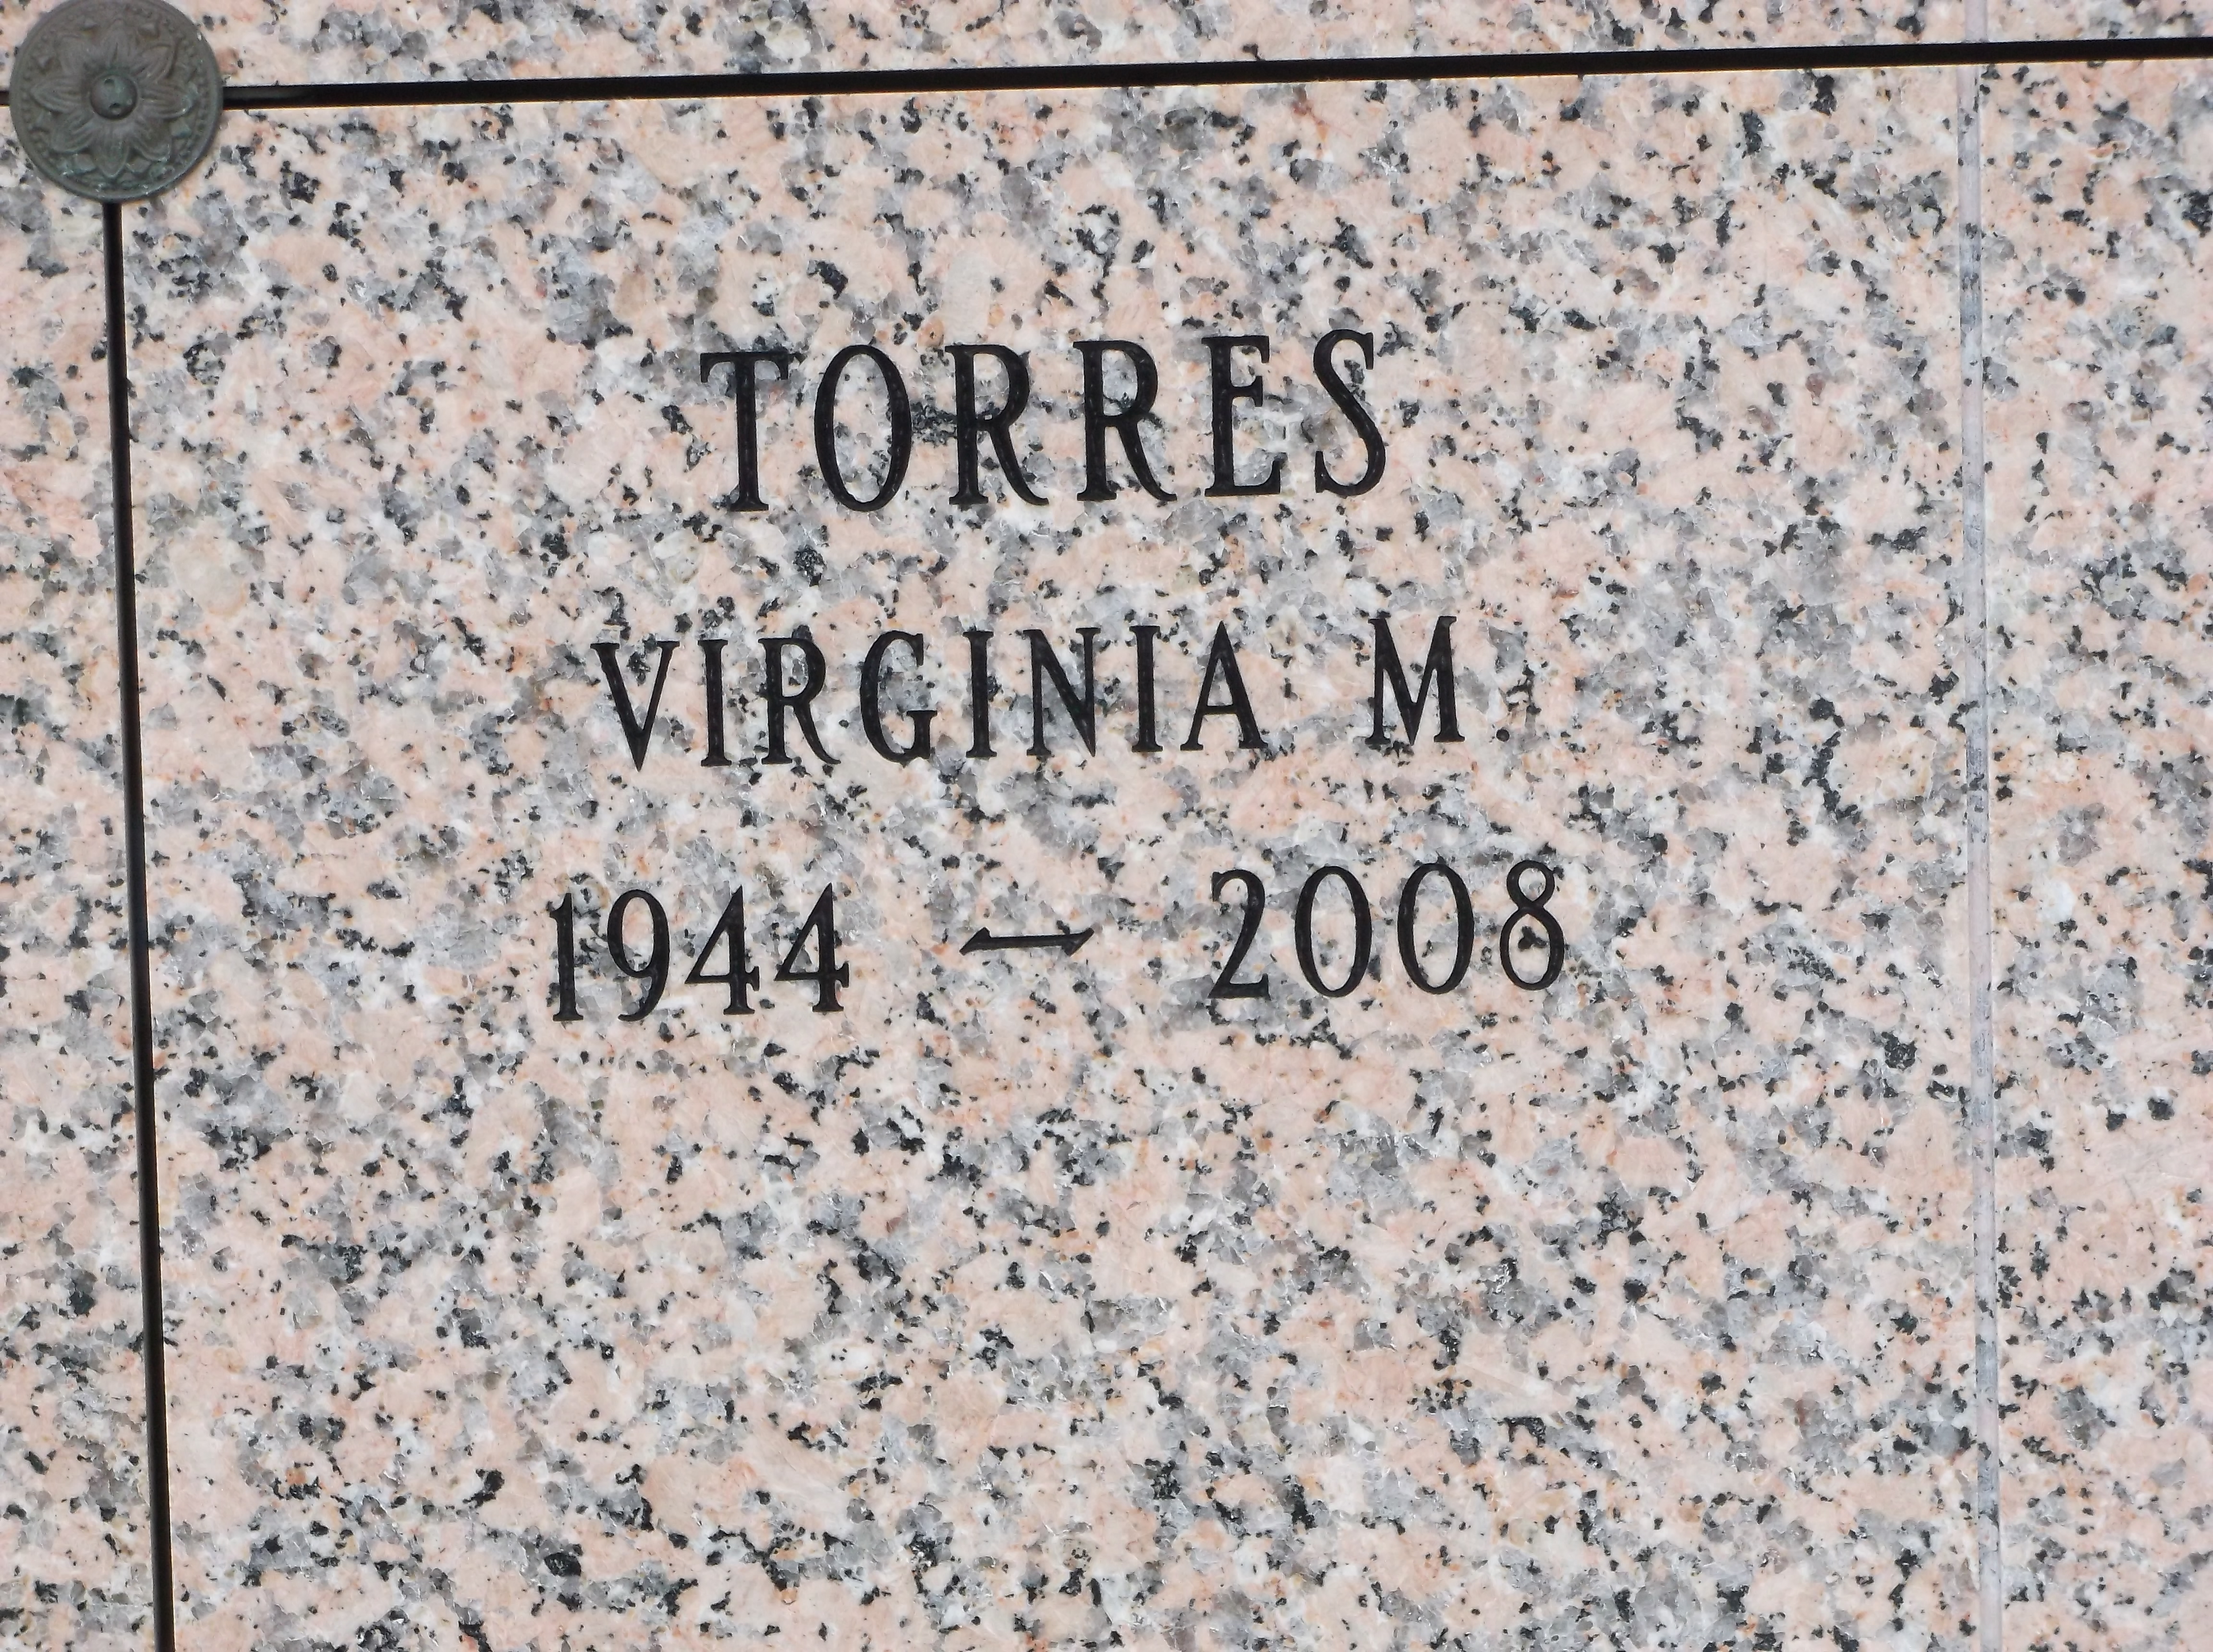 Virginia M Torres